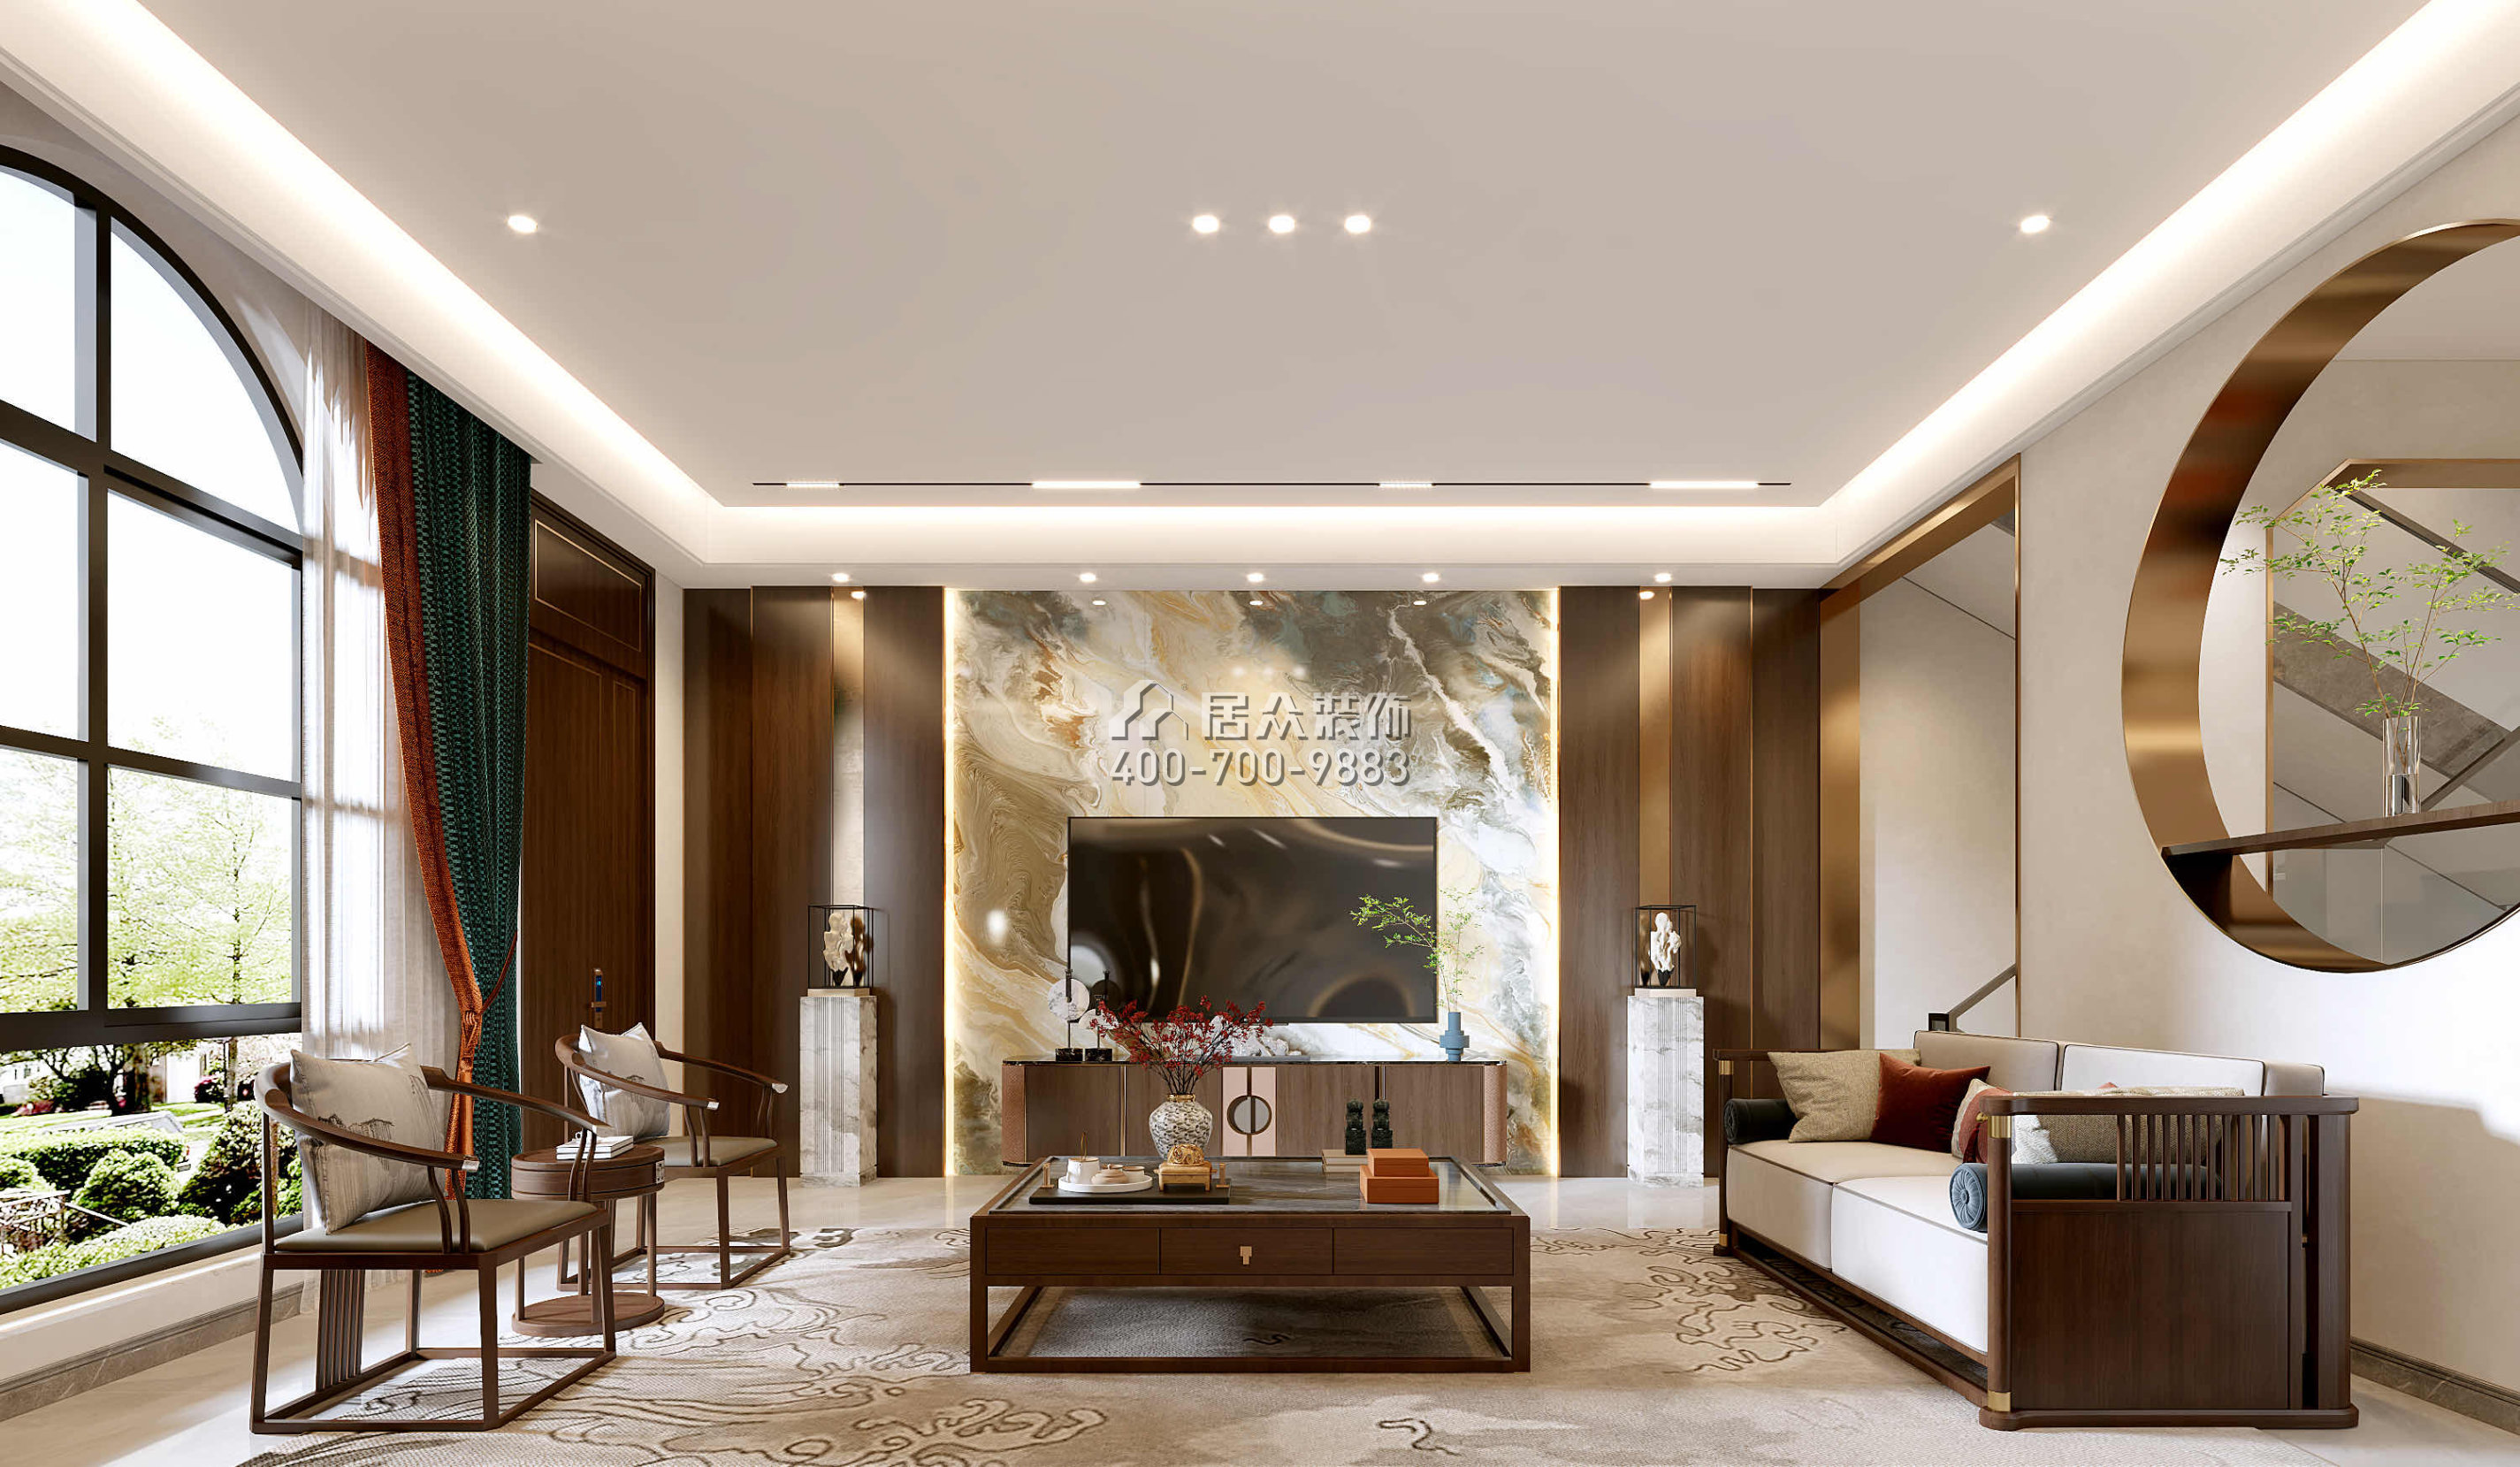 觀嶺高爾夫豪庭430平方米中式風格別墅戶型客廳裝修效果圖